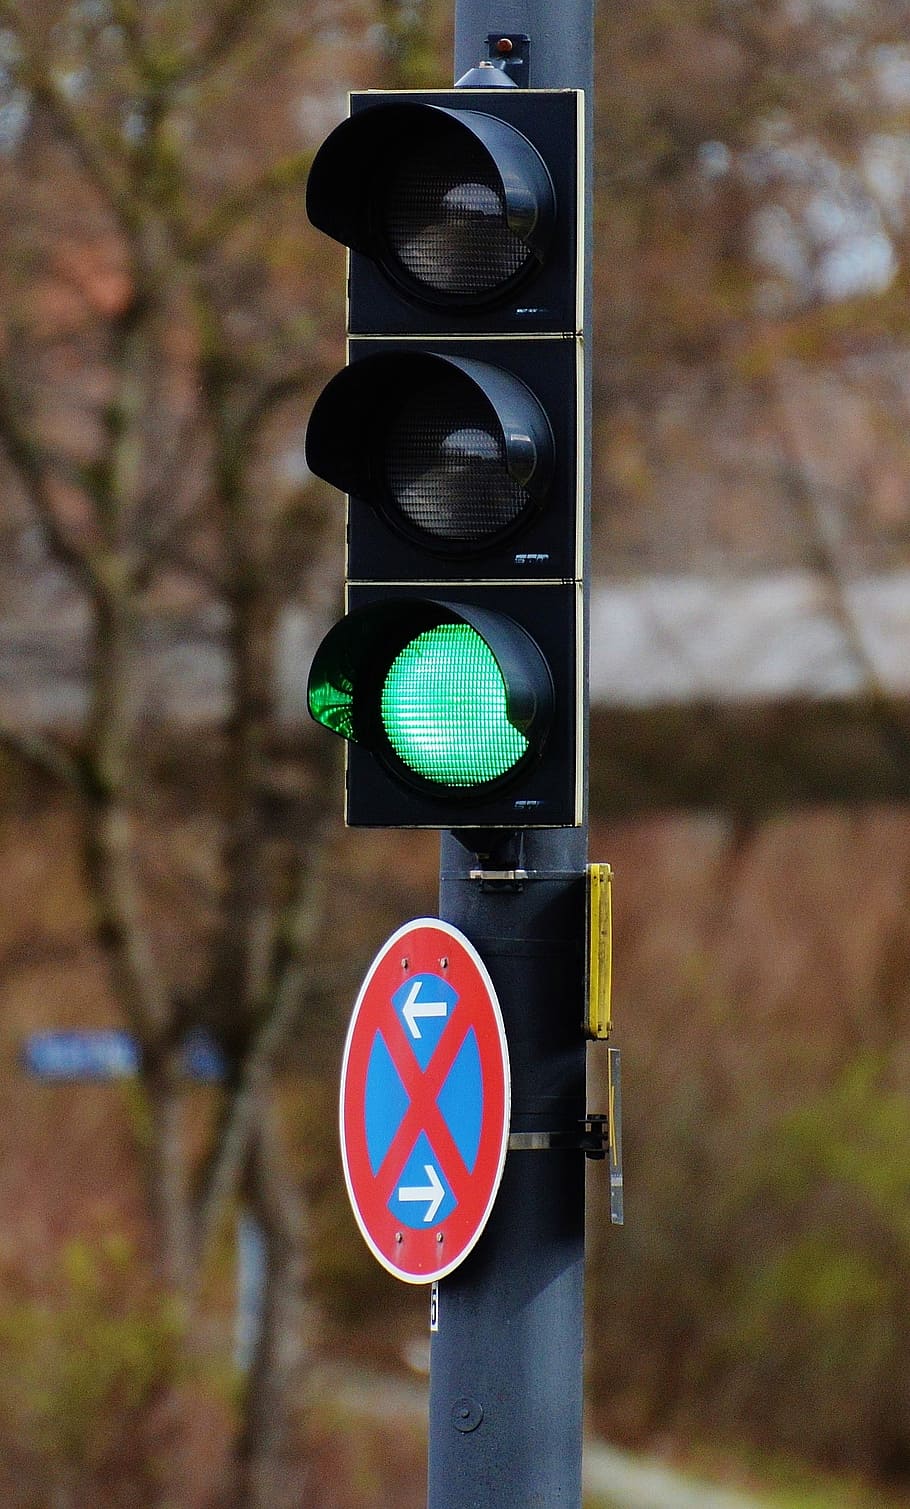 Semáforos, verde, carretera, señal luminosa, señal de semáforo, señal de tráfico, baliza, semáforo, tráfico, señal